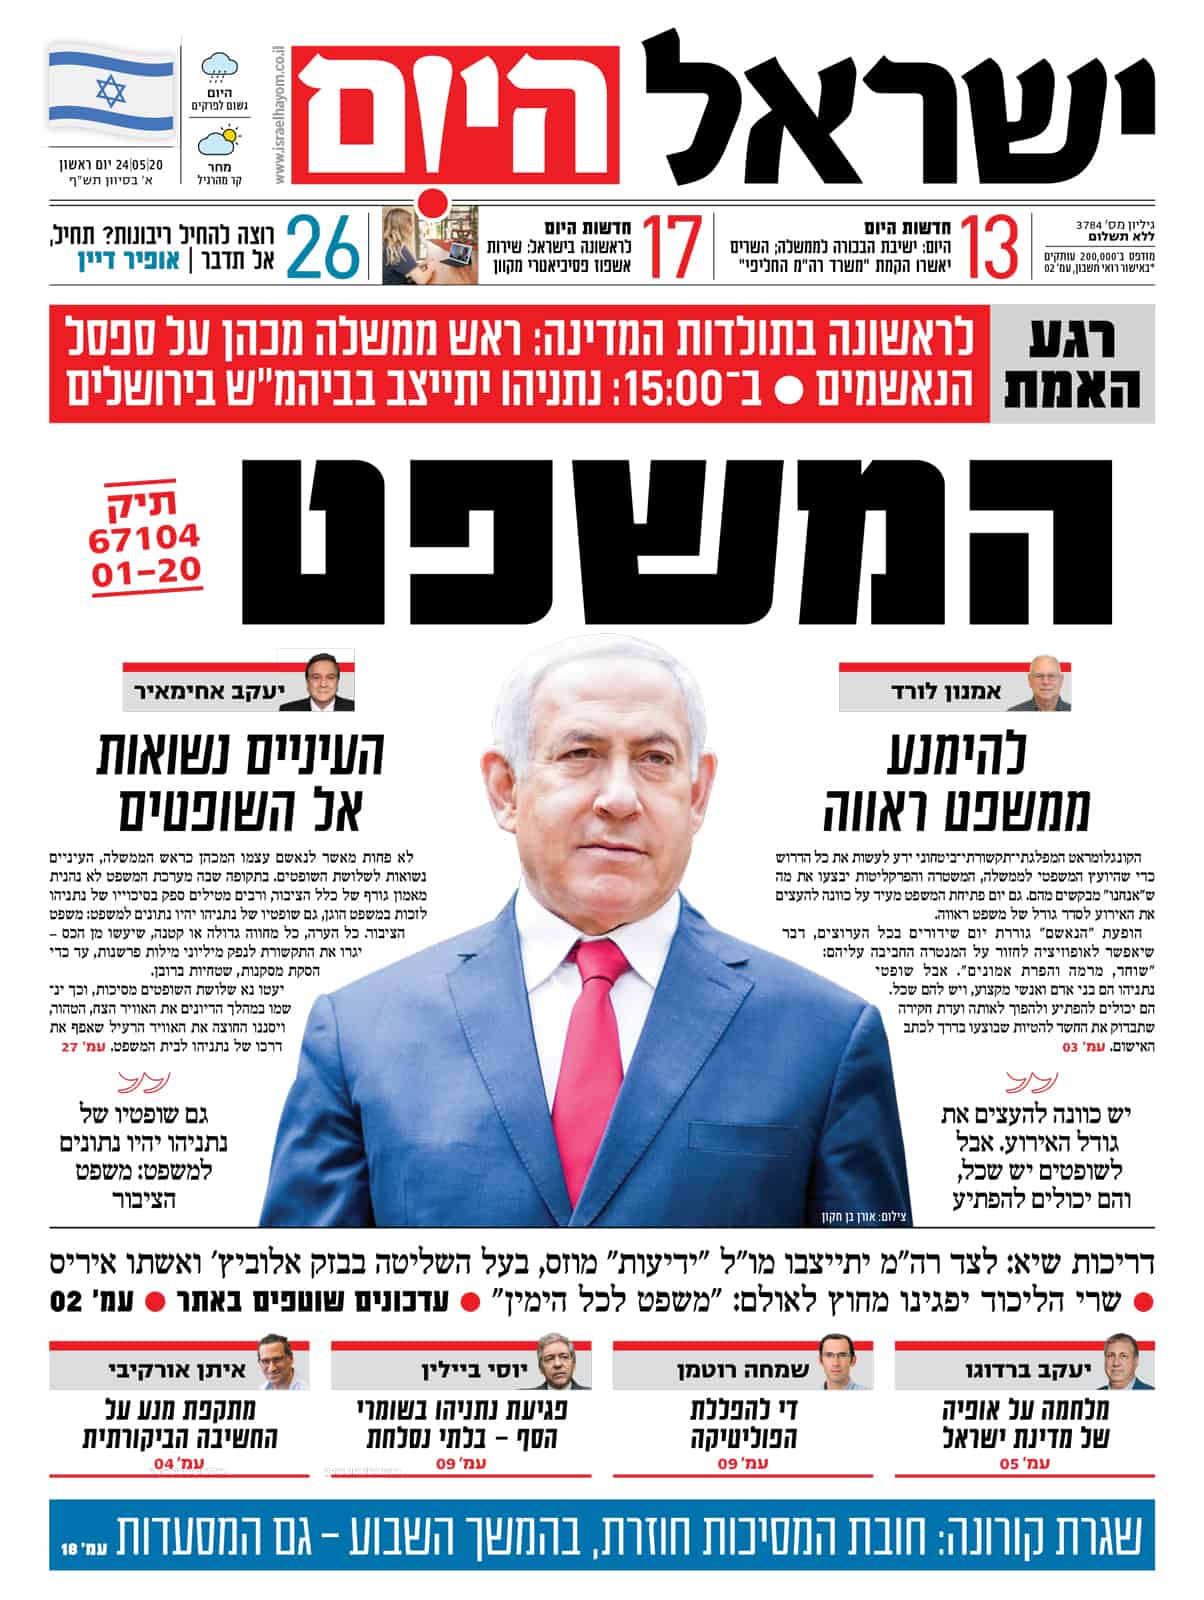 שער עיתון ישראל היום ב-24 במאי 2020